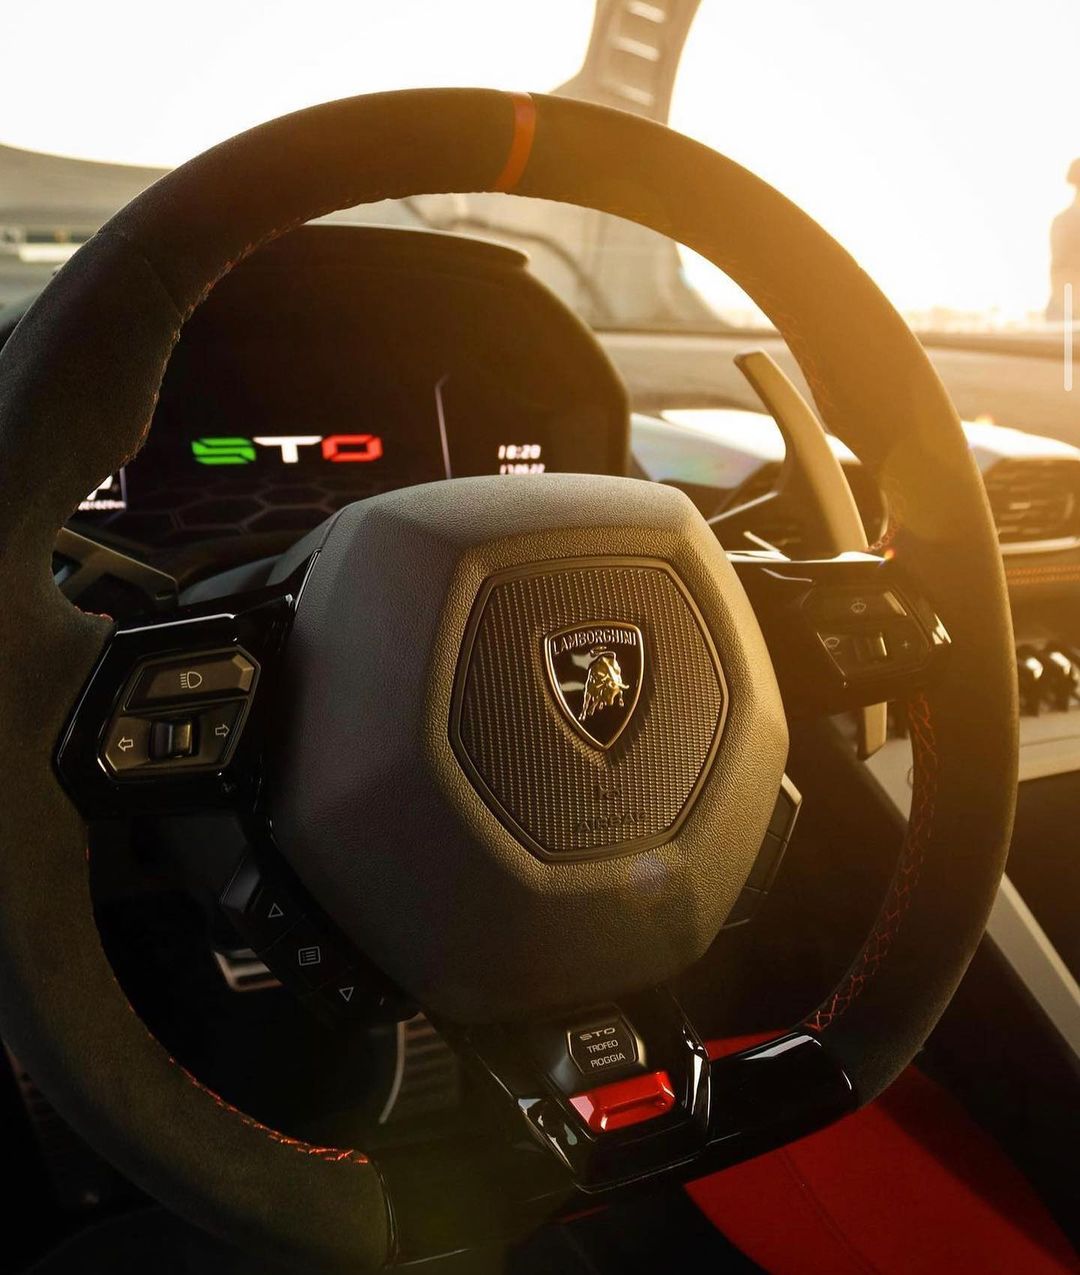 Lamborghini Huracan STO rental dubai – Rent Lamborghini Dubai 03